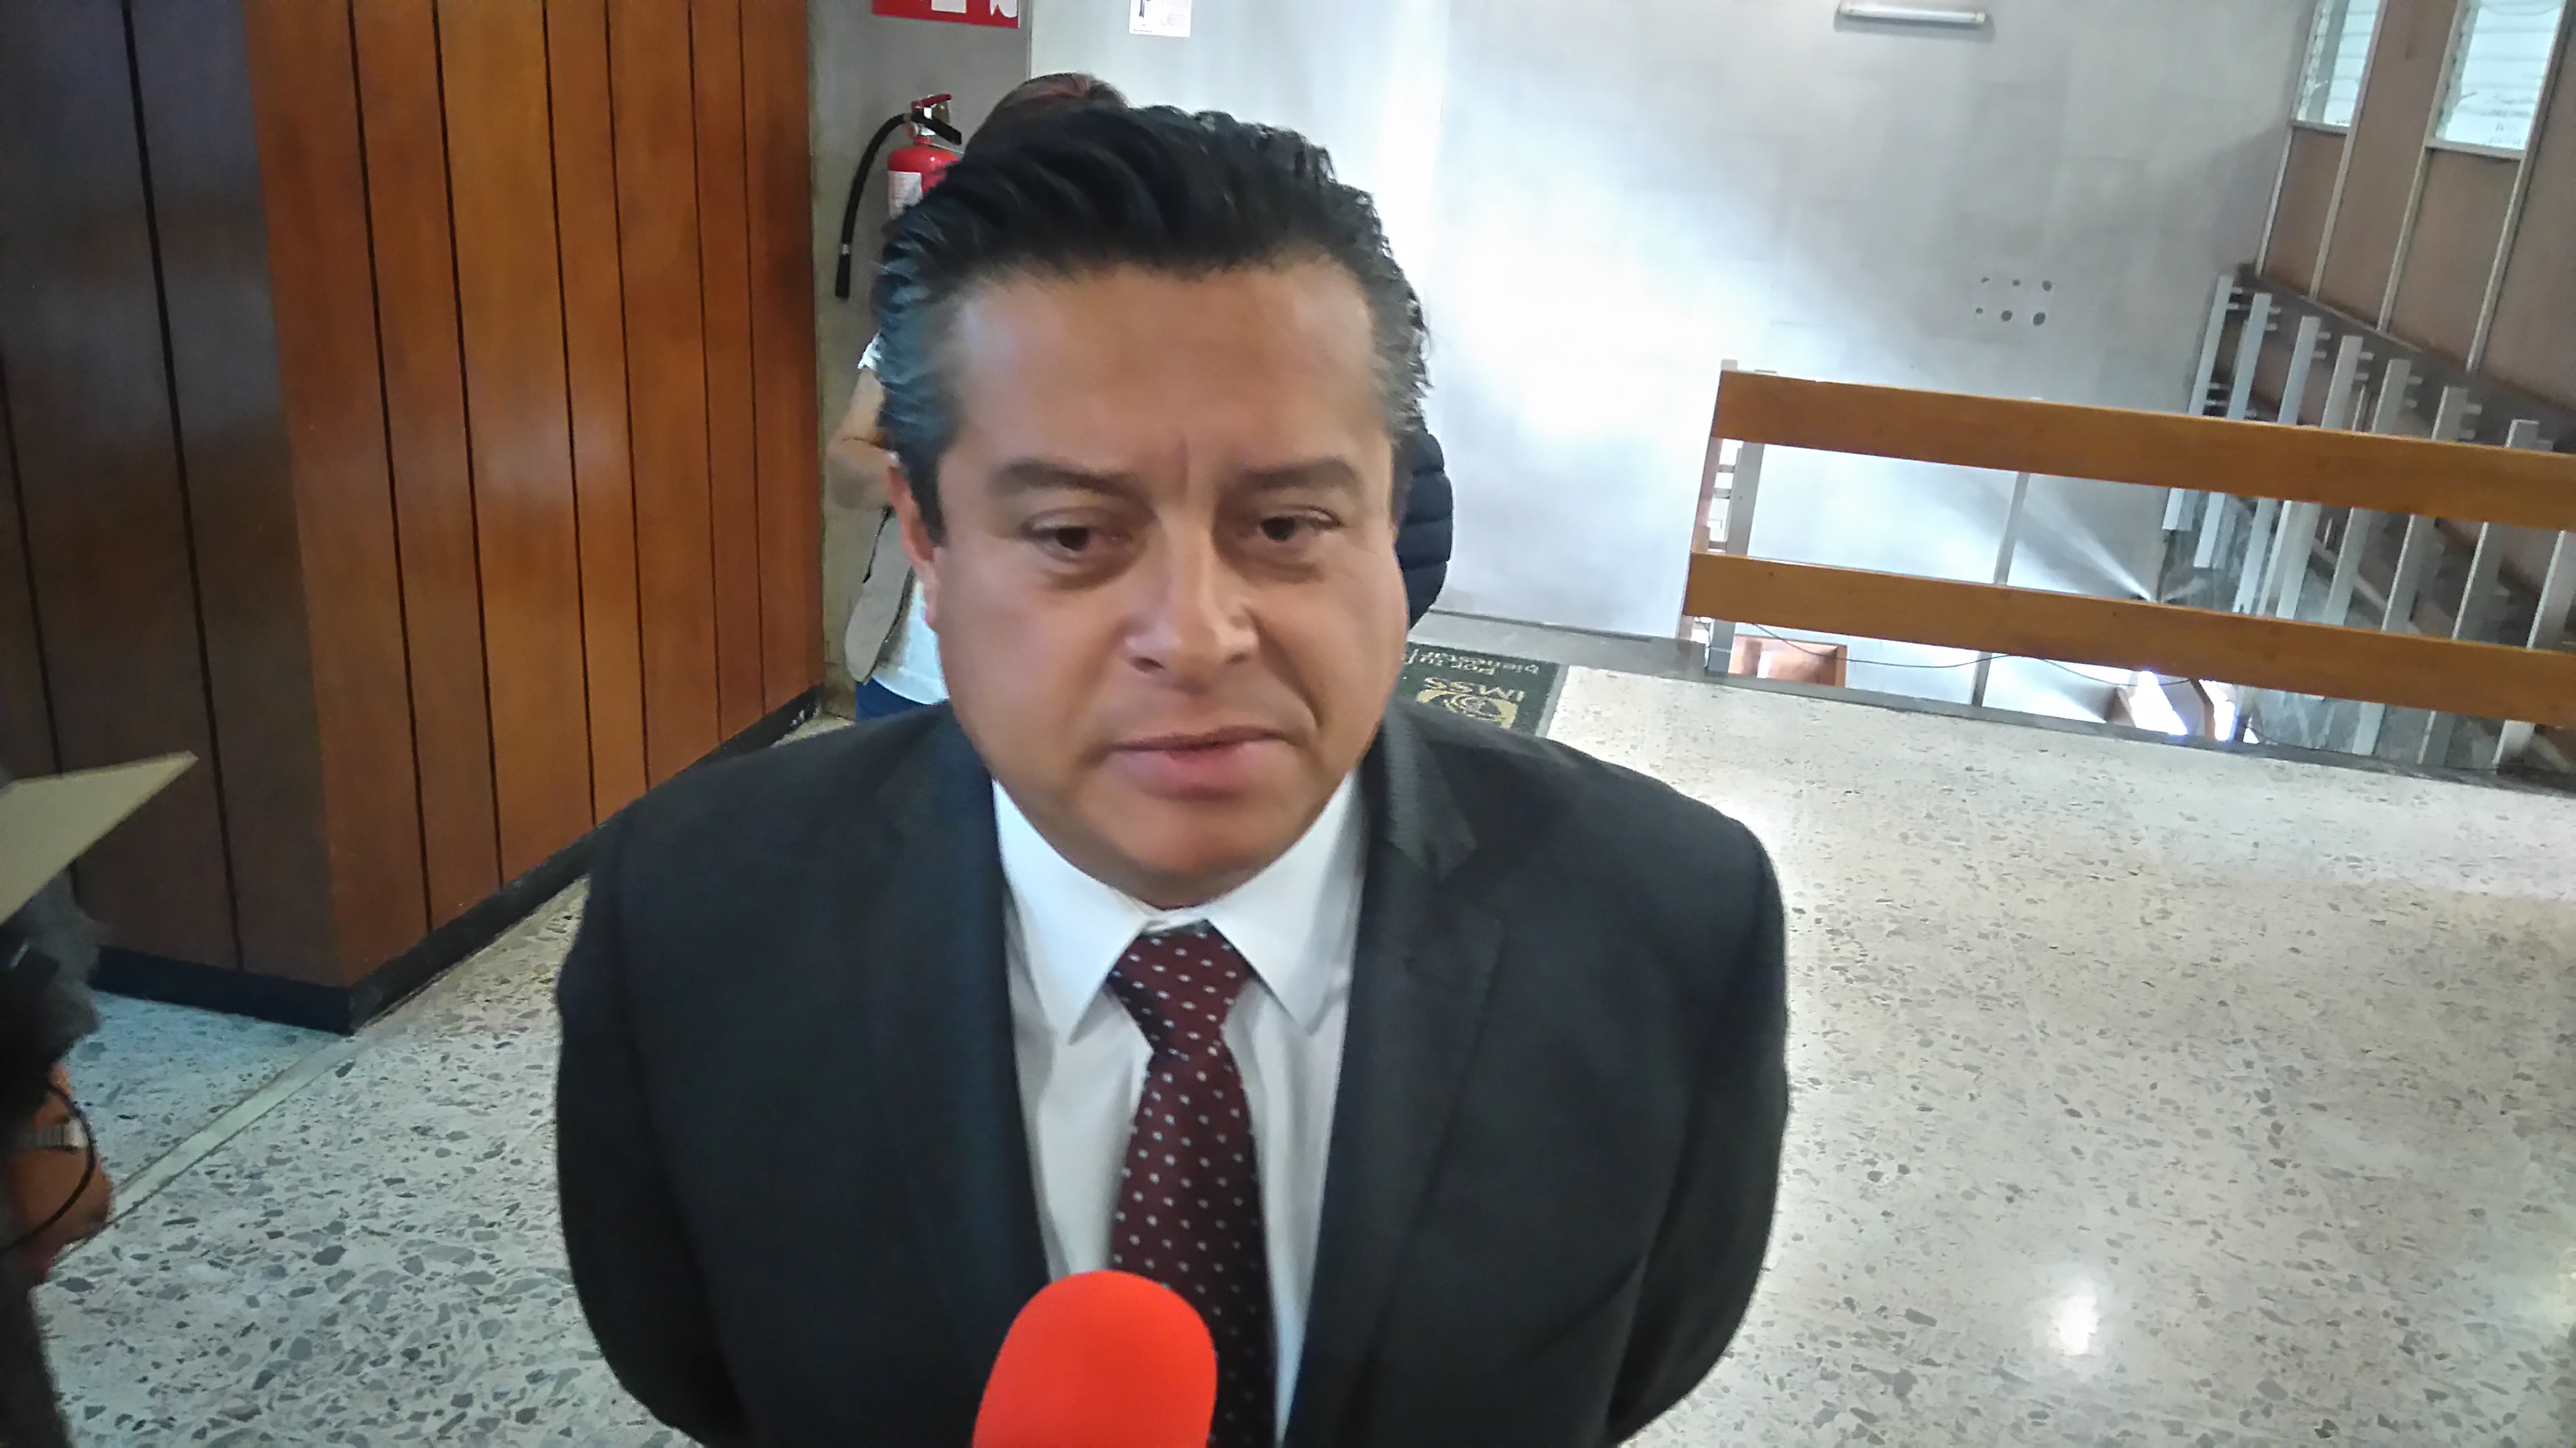  Por sismos, presupuesto del IMSS Querétaro podría disminuir para 2018: Manuel Ruiz